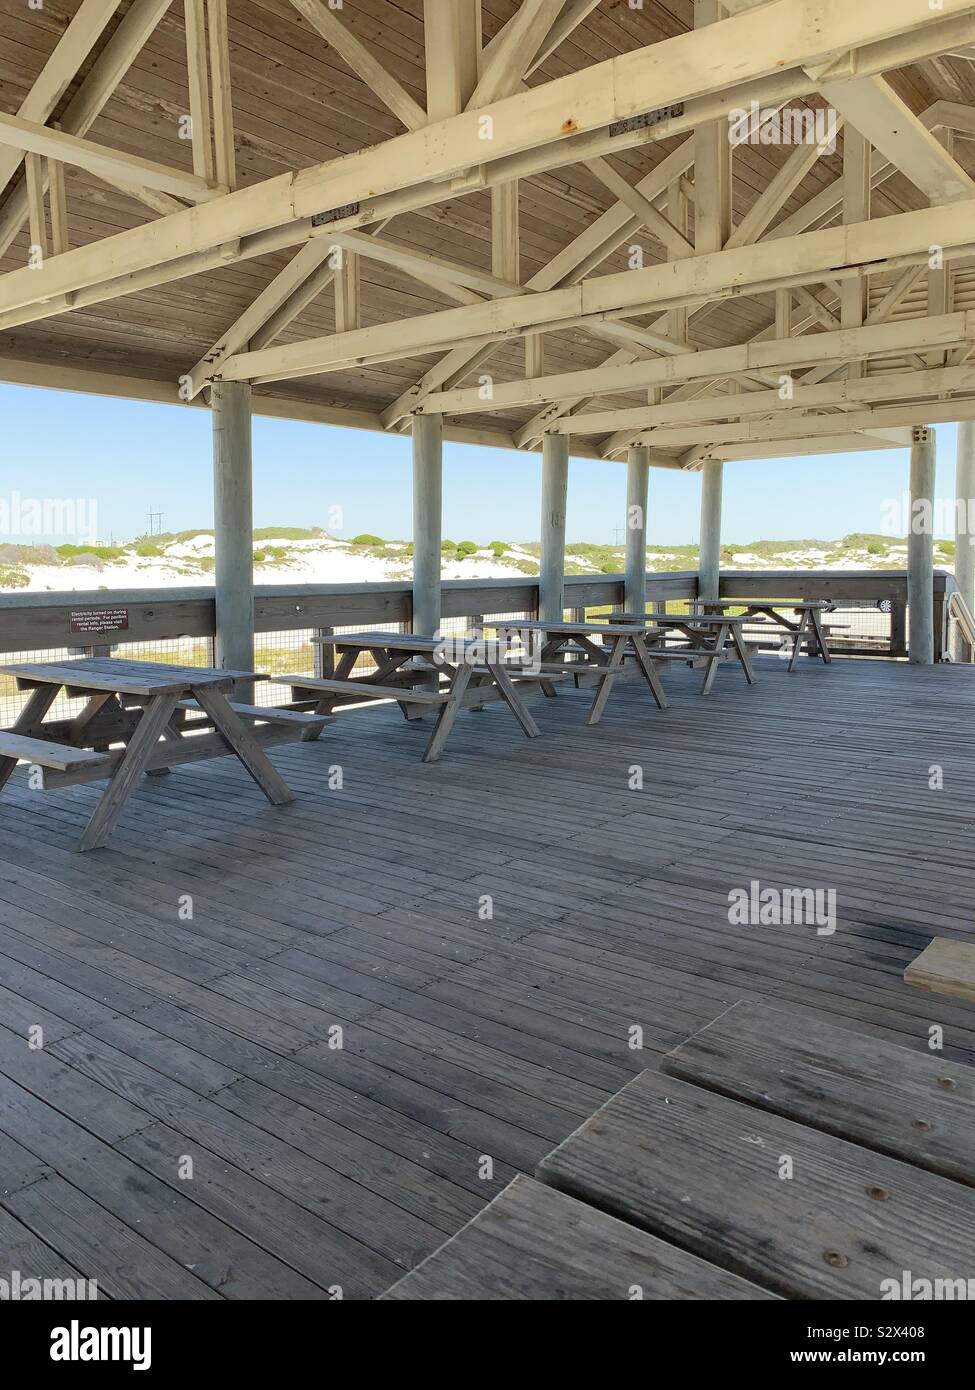 Pabellón al aire libre en la playa, área de picnic con mesas y vista de dunas de arena blanca Foto de stock